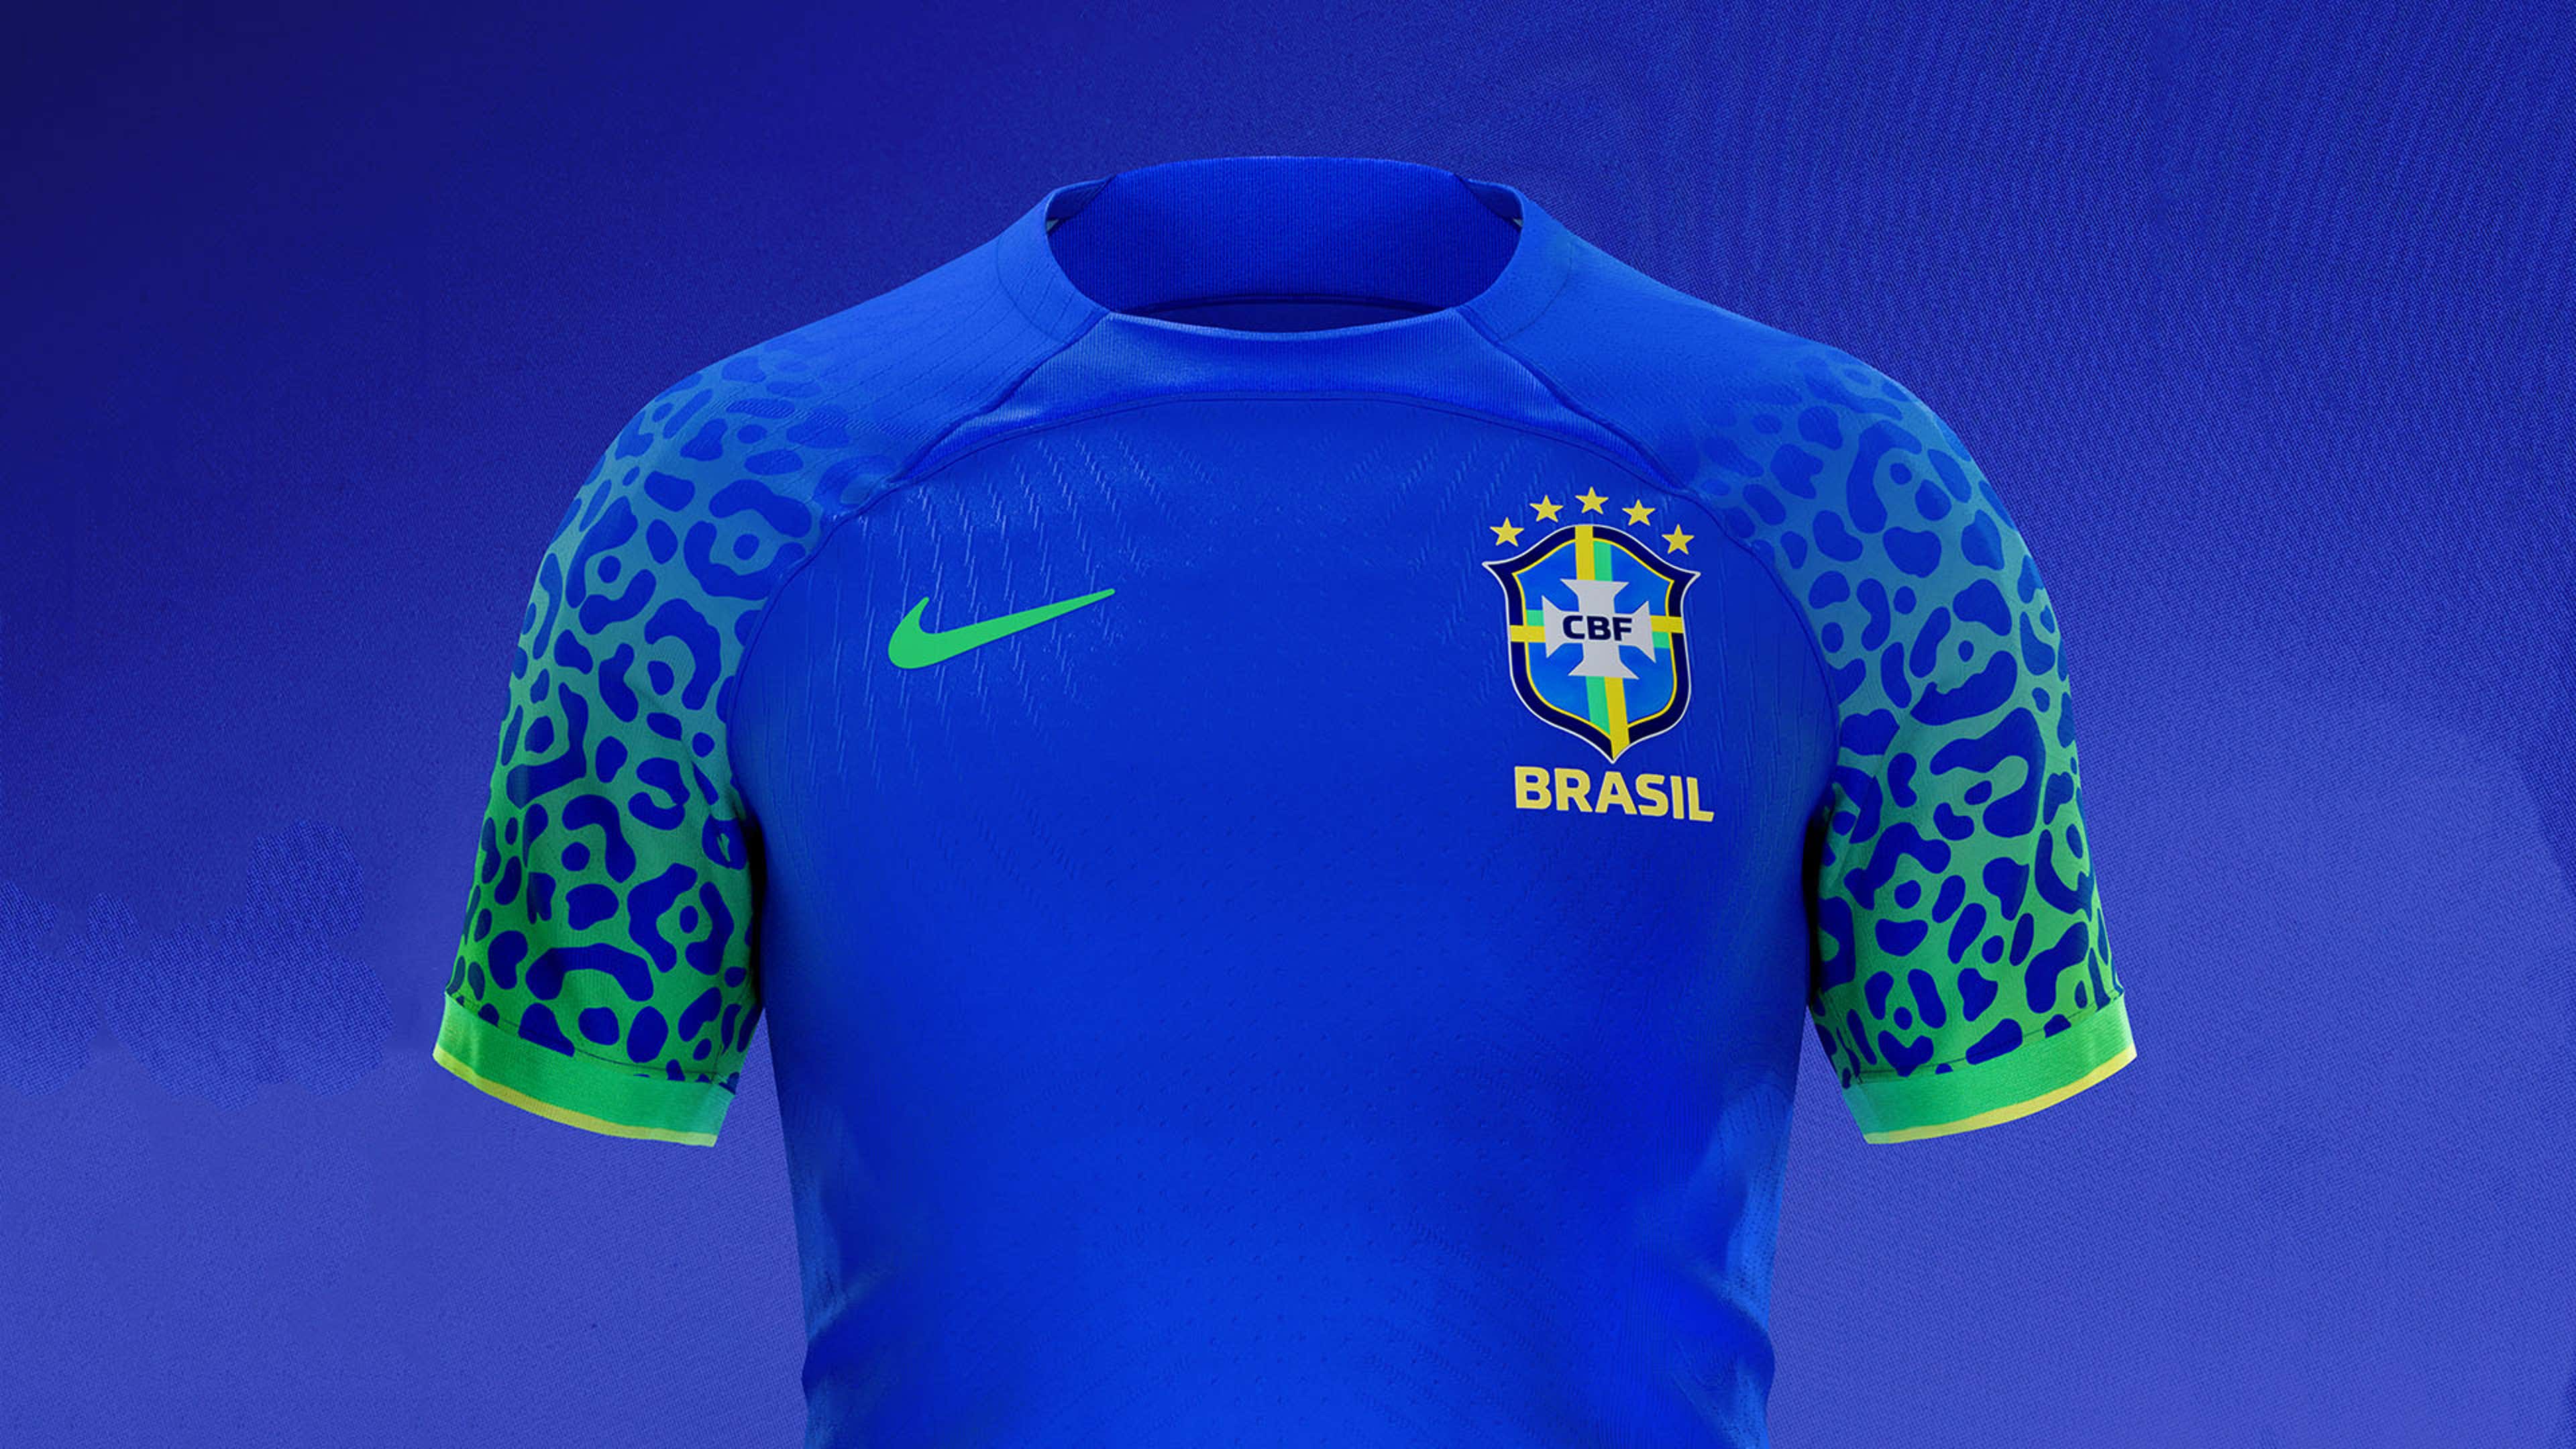 Seleção brasileira: relembre todas as camisas usadas em Copas do